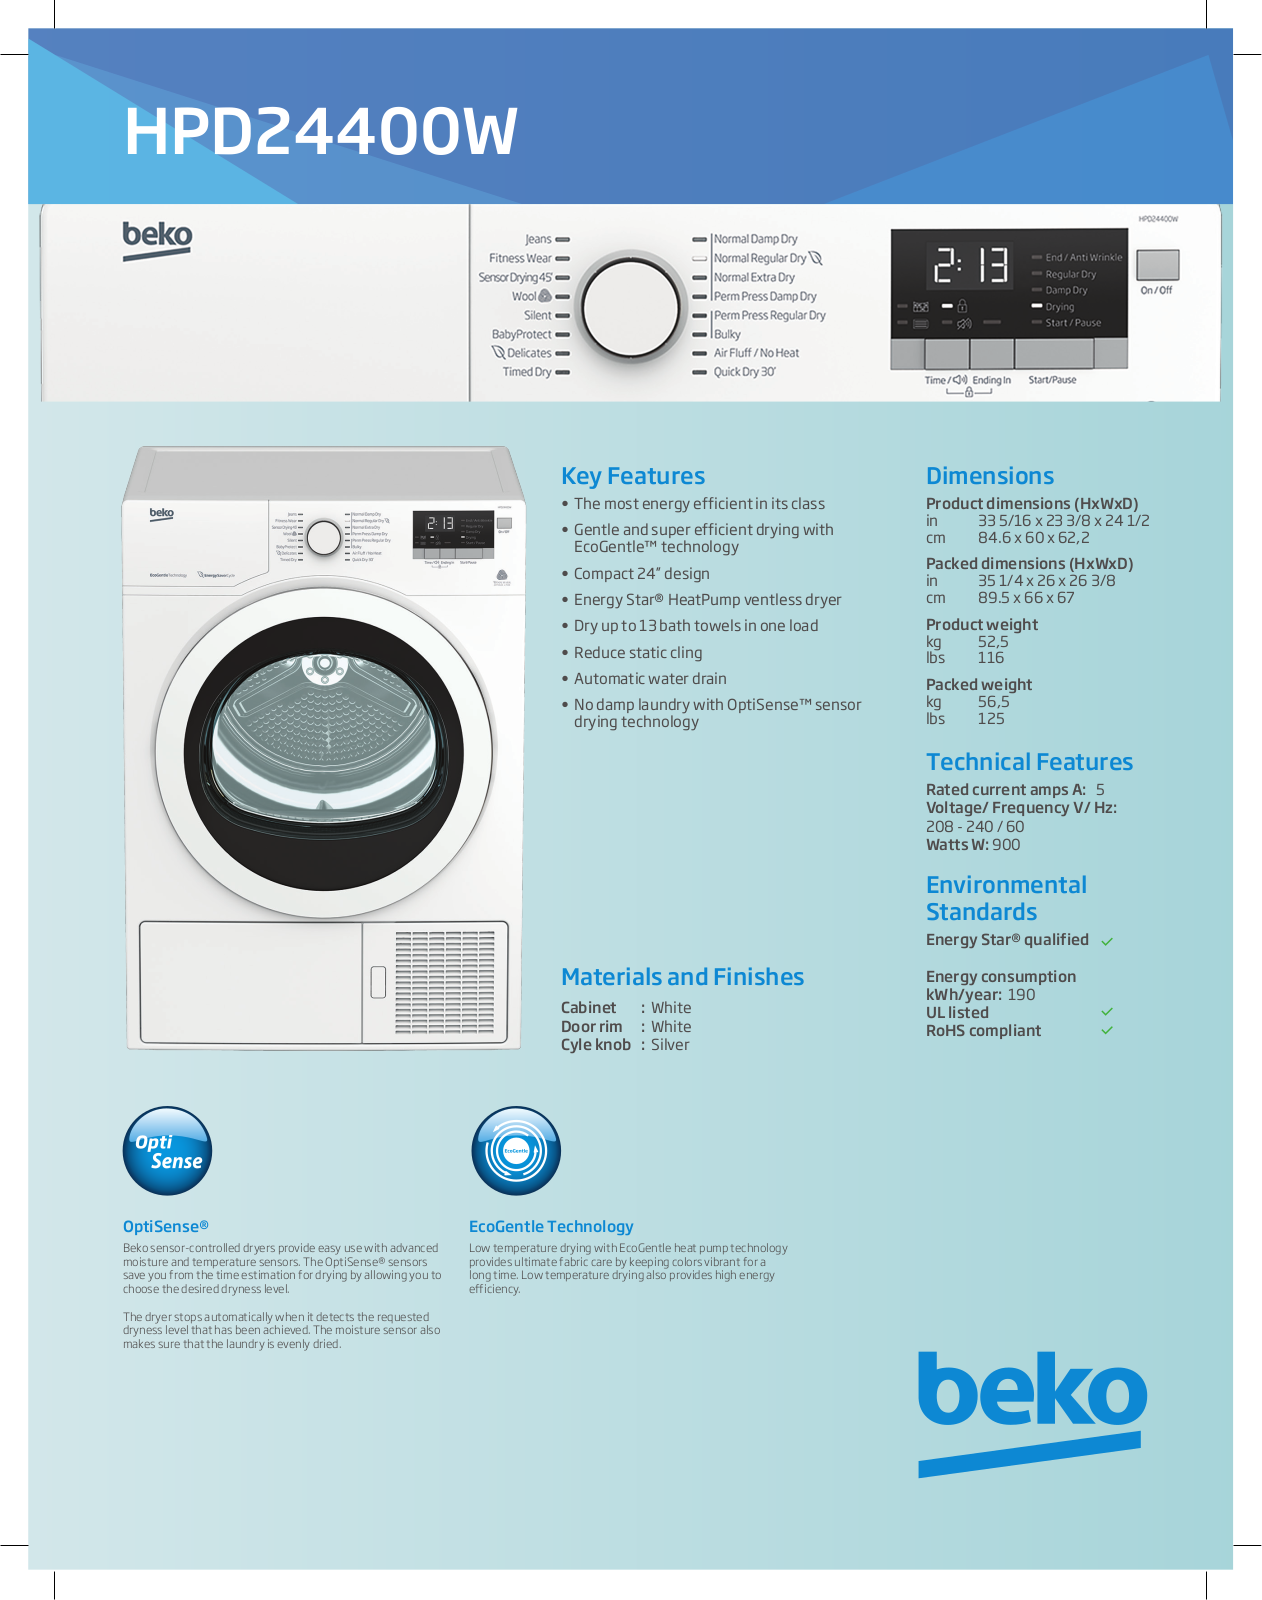 Beko HPD24400W Specification